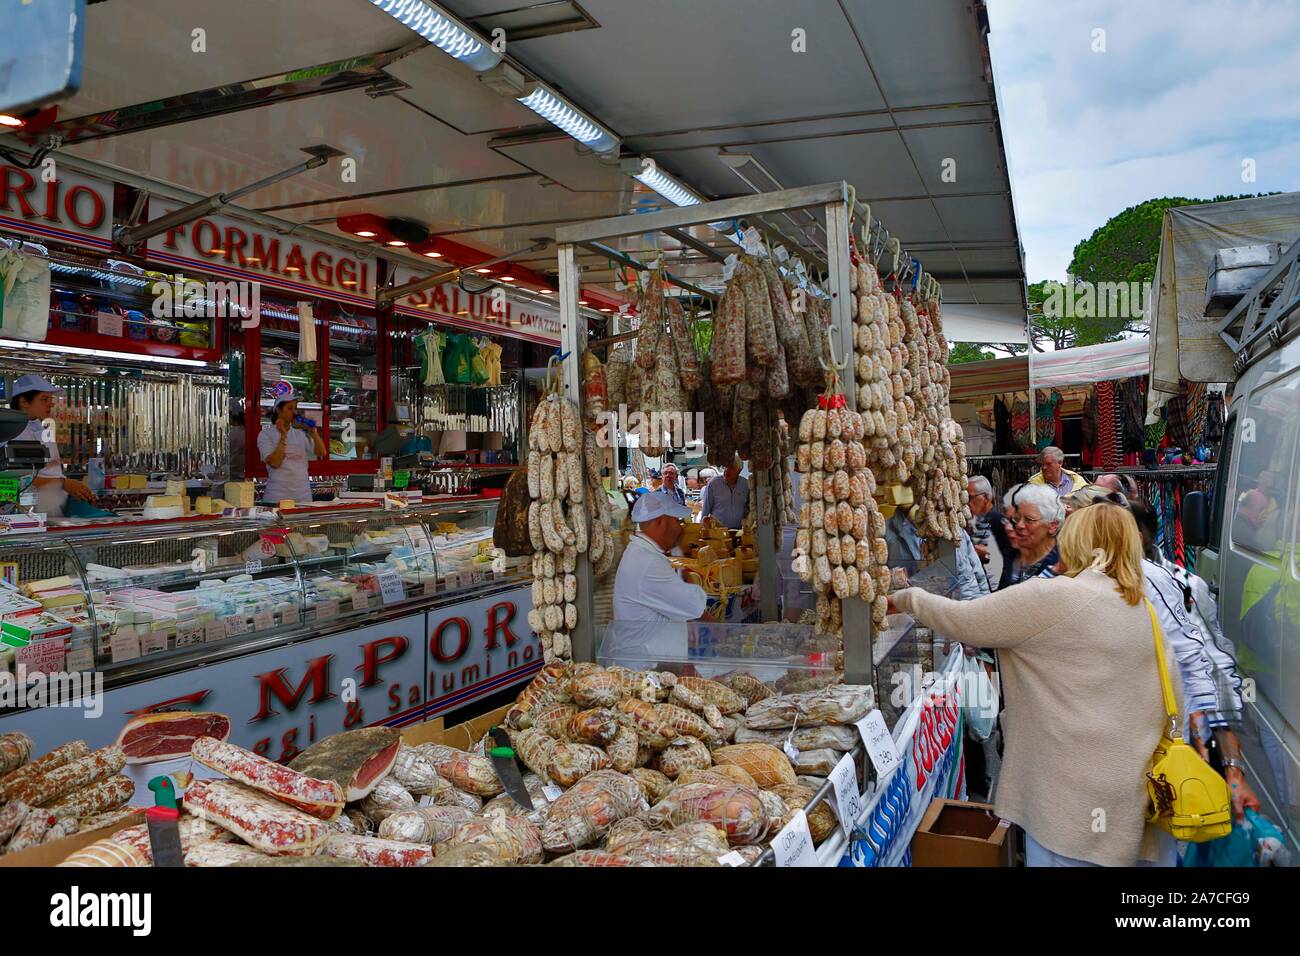 Der Wochenmarkt a Desenzano del Garda in der Provinz Brescia wird direkt am Ufer des Gardasee abgehalten. Kleidung, Schuhe, Fleisch, Käse, Olivenöl u Foto Stock